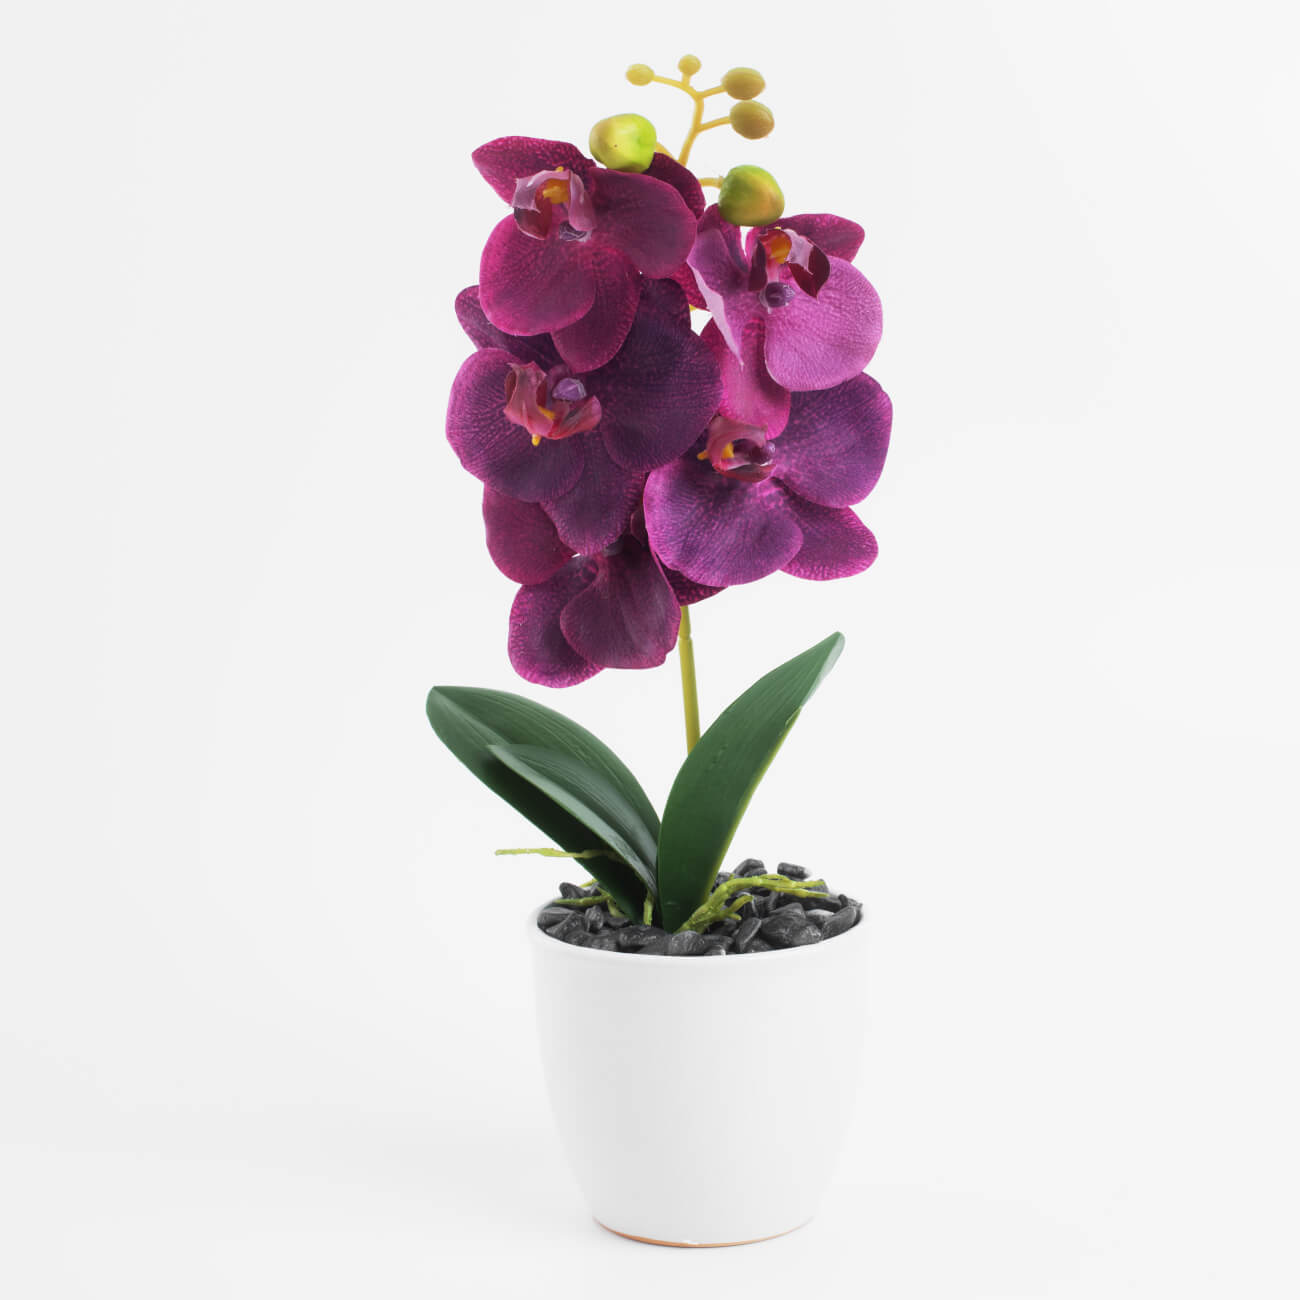 Растение искусственное, 35 см, в горшке, полиэстер/керамика, Розовая орхидея, Orchid растение силиконовое аквариумное светящееся в темноте 8 х 18 см зелёное